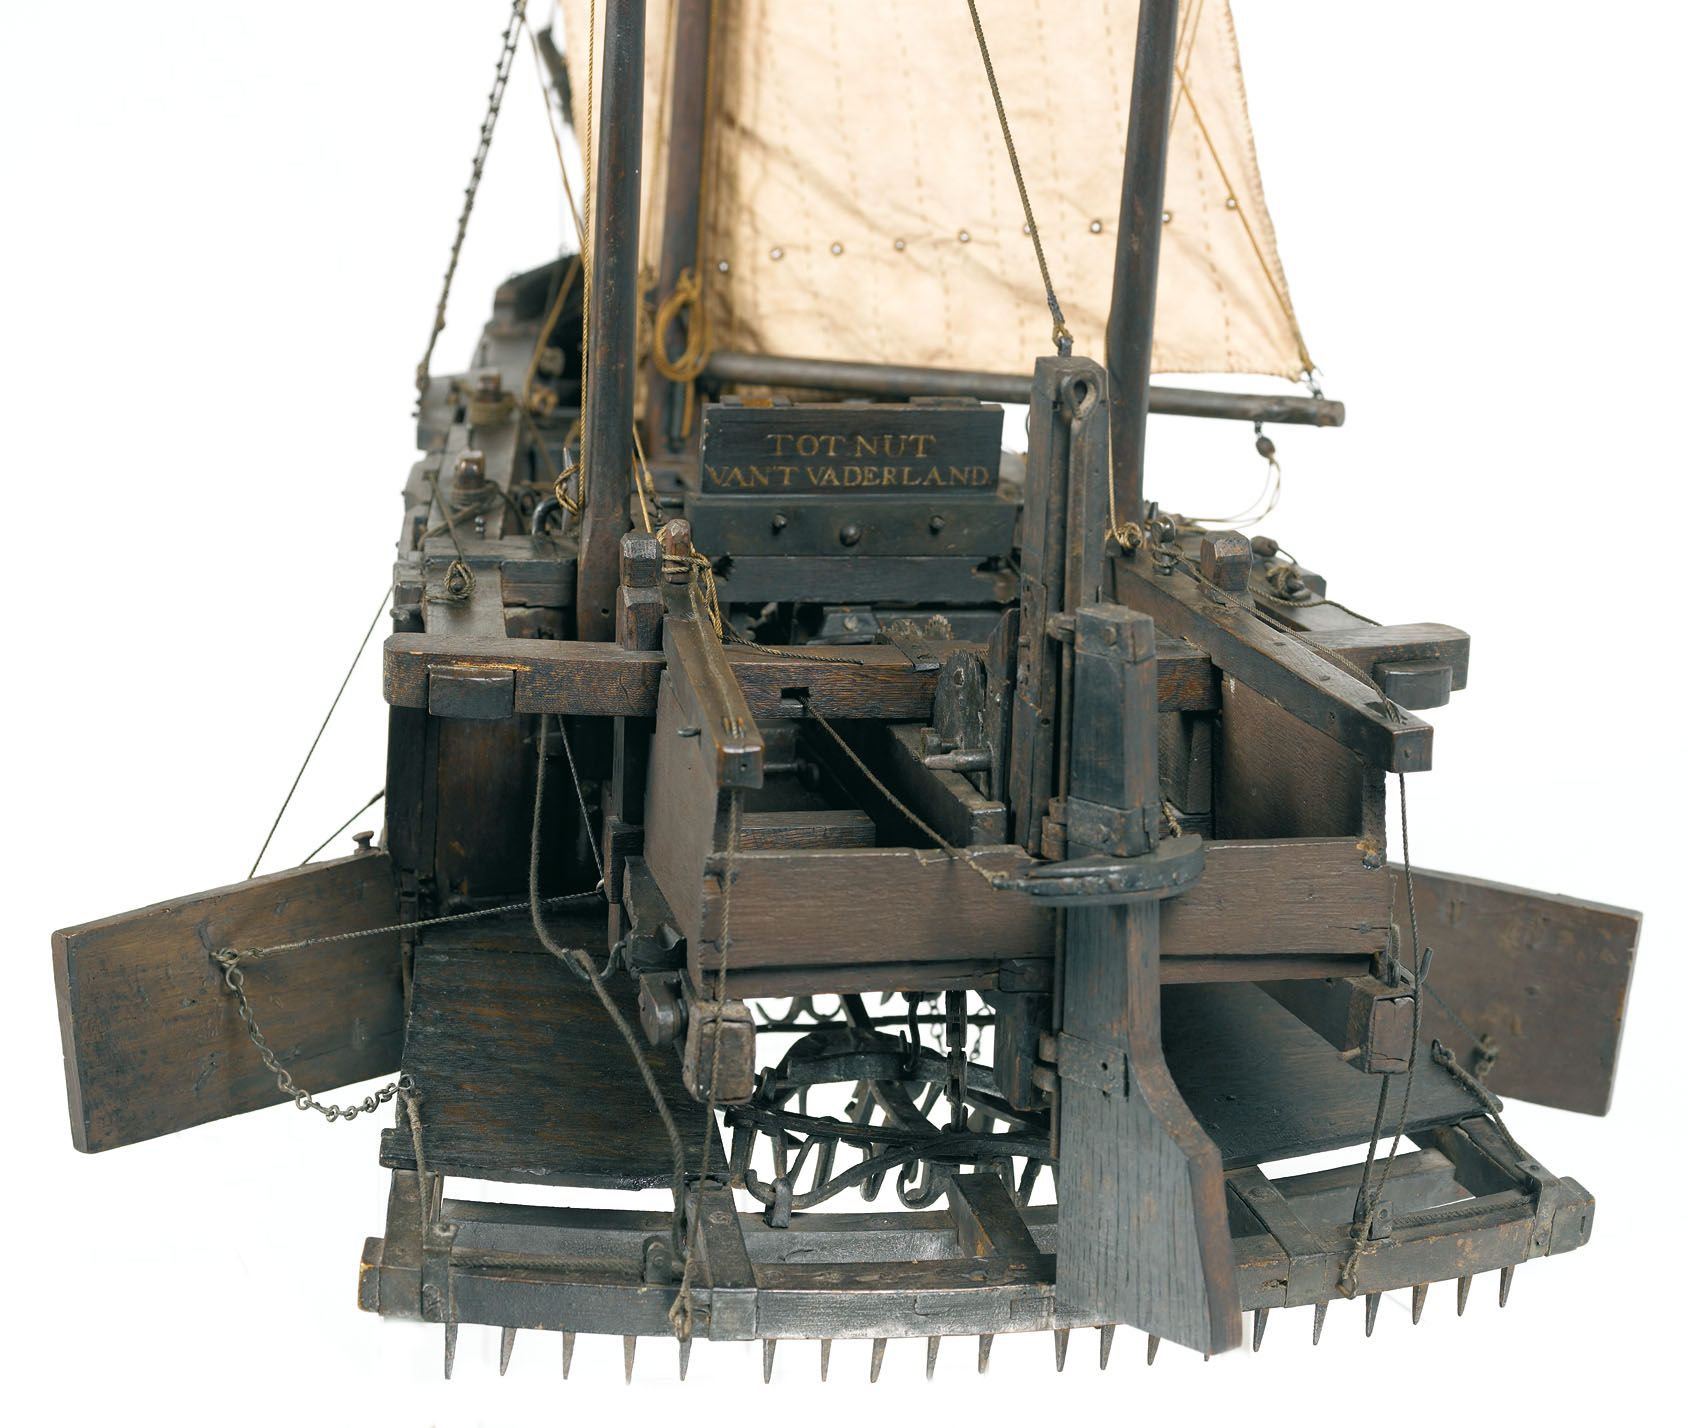 Scheepsmodel Krabbelaar, detail. Datering: eind achttiende eeuw. Herkomst: Stedelijke Collectie Veere. Museum Veere, foto Ivo Wennekes.